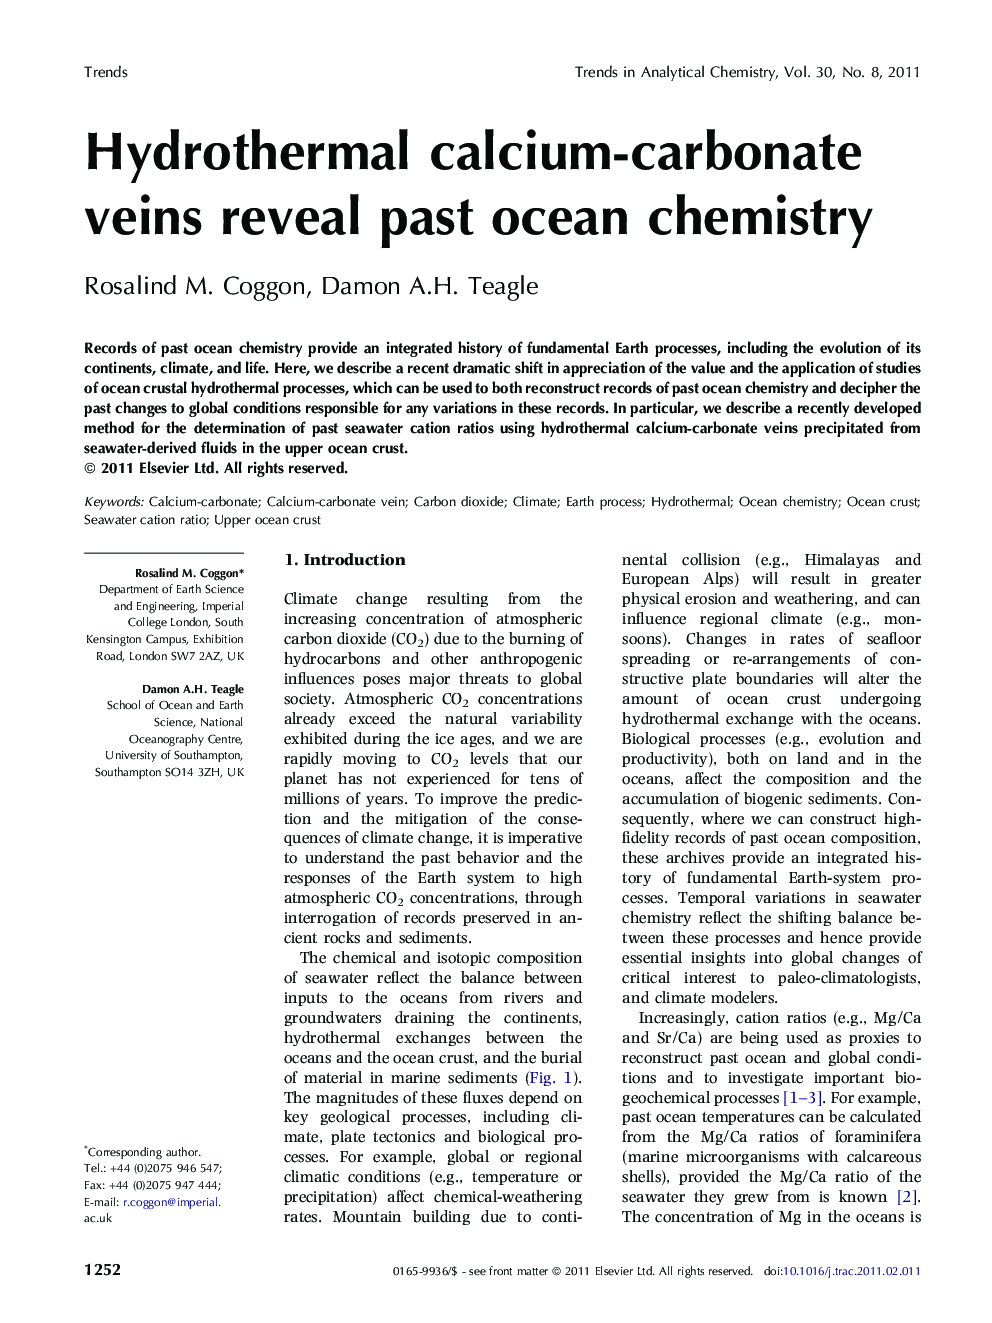 Hydrothermal calcium-carbonate veins reveal past ocean chemistry